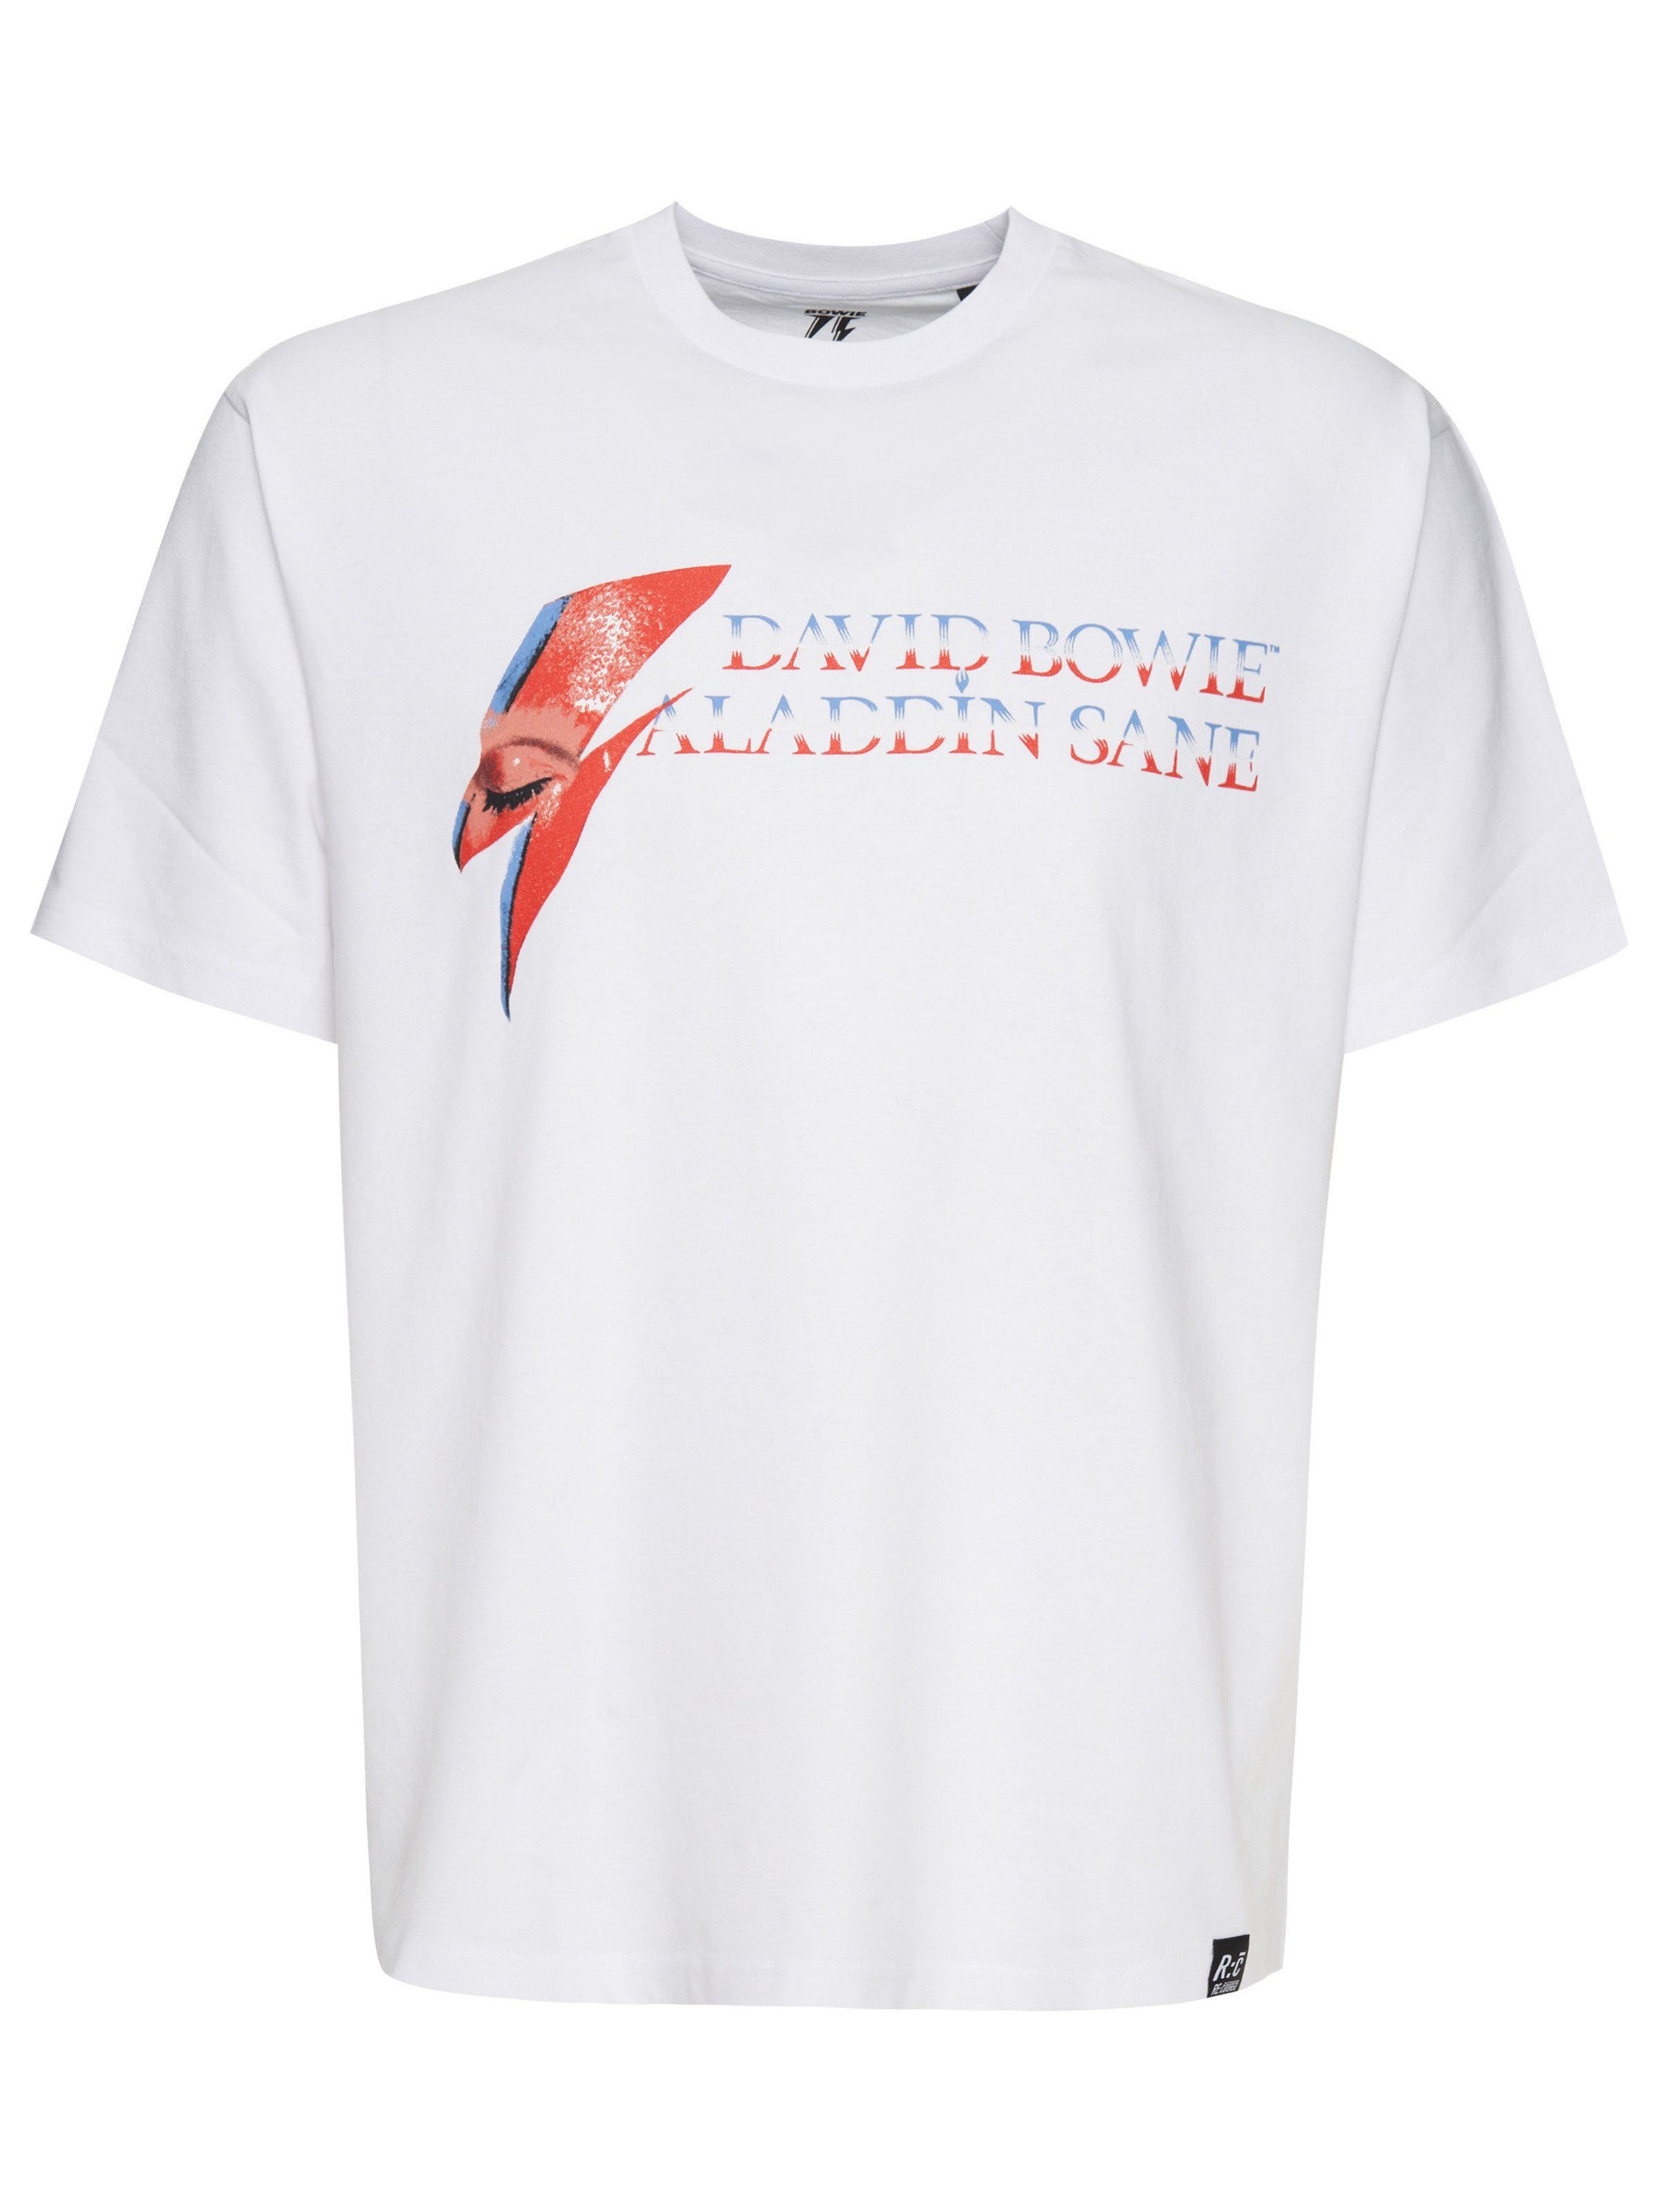 Recovered T-Shirt Weiß GOTS zertifizierte Bowie David Sane Bio-Baumwolle Aladdin Relaxed